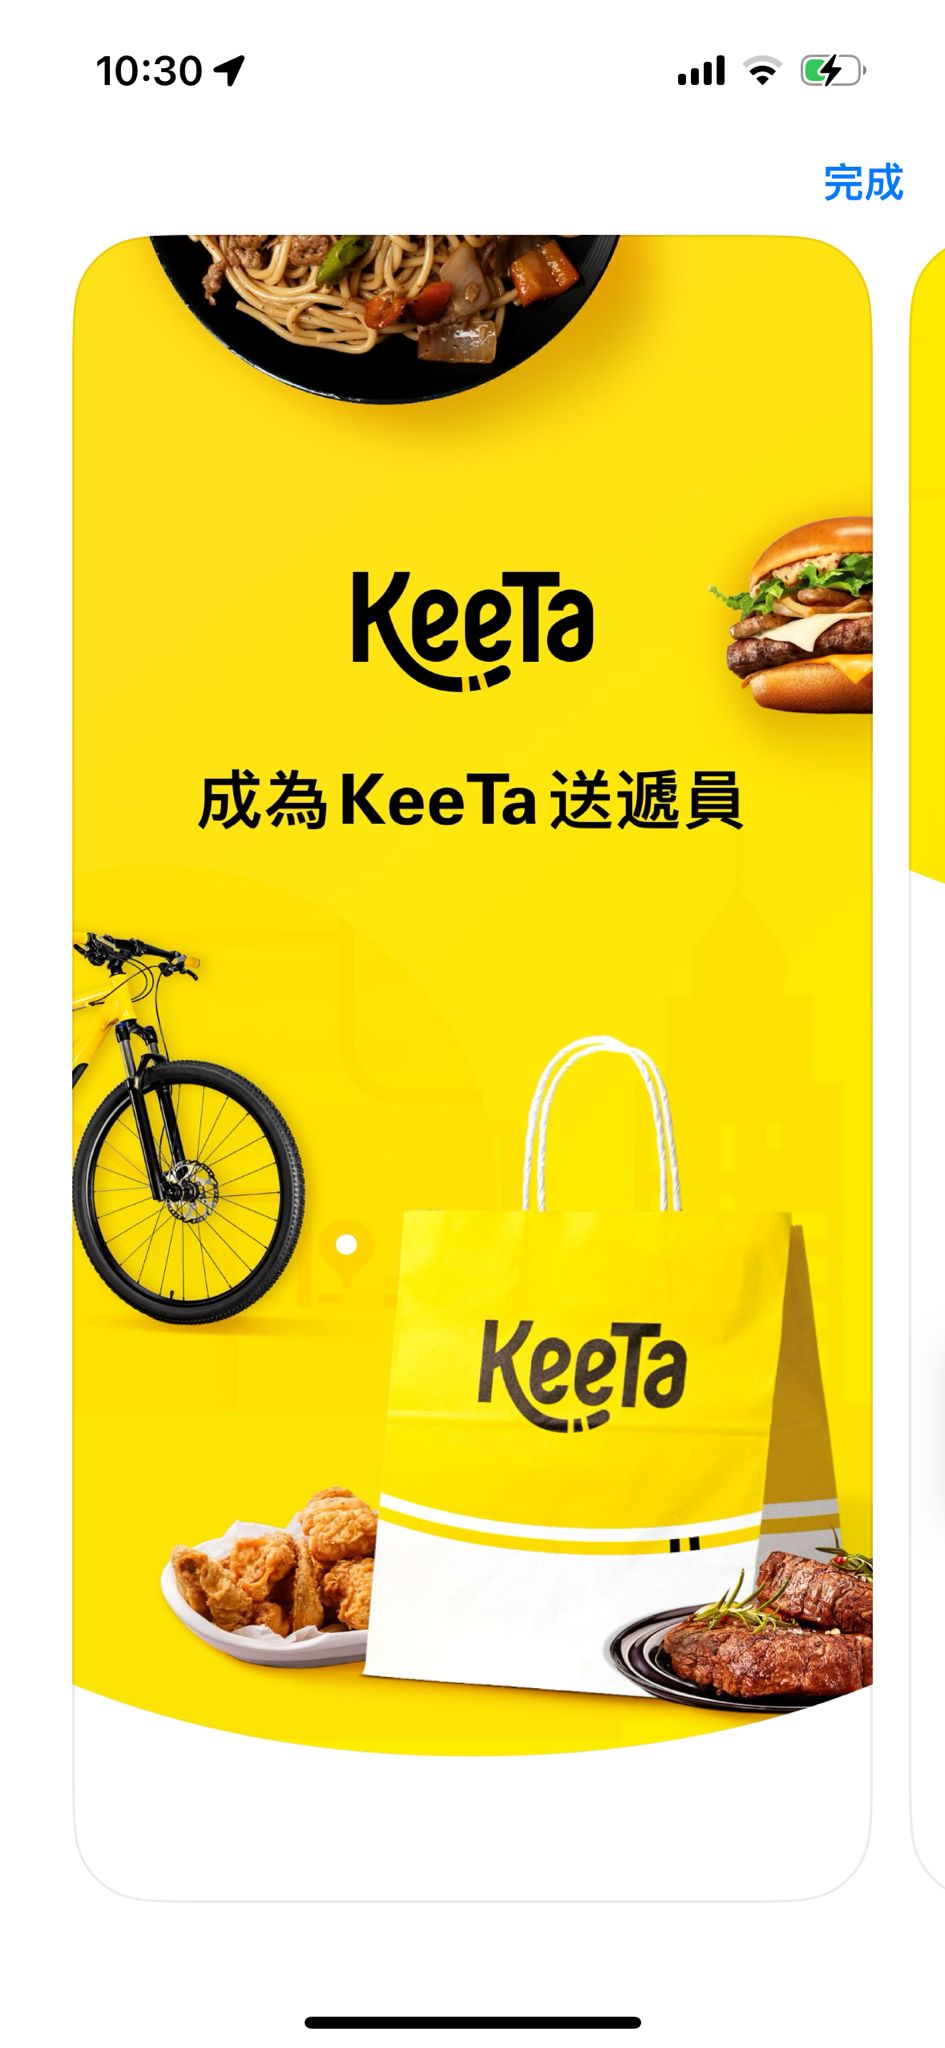 Keeta車手版App招募送遞員